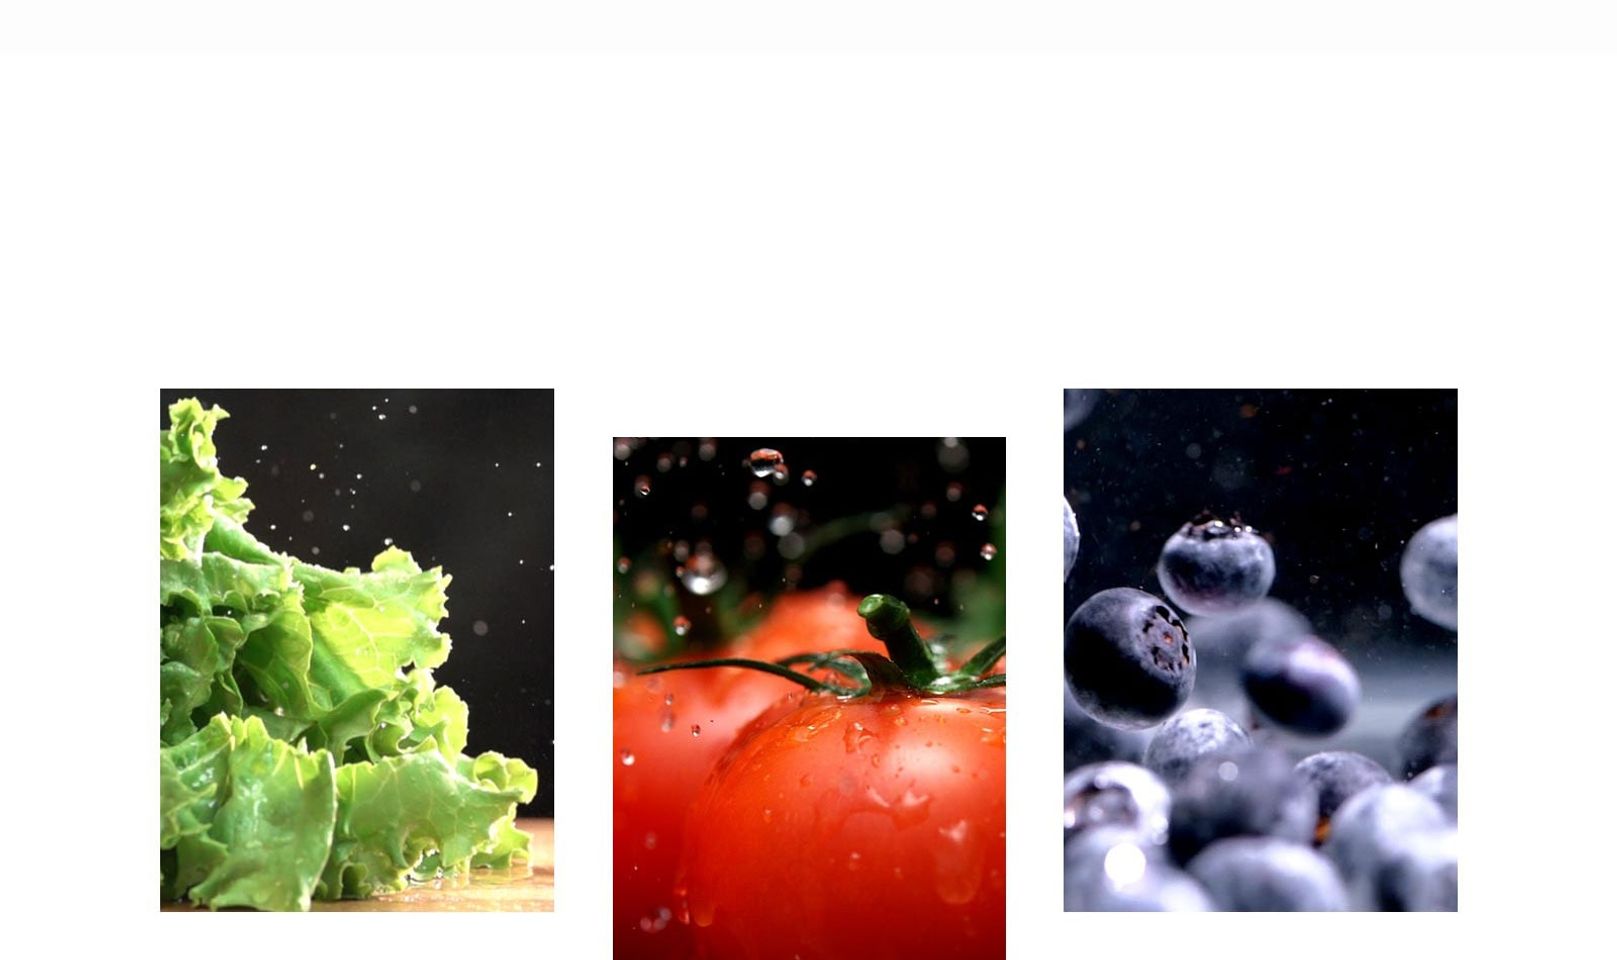 trái cây và rau xanh như rau diếp, cà chua và quả việt quất được bảo quản tươi ngon trong tủ lạnh.